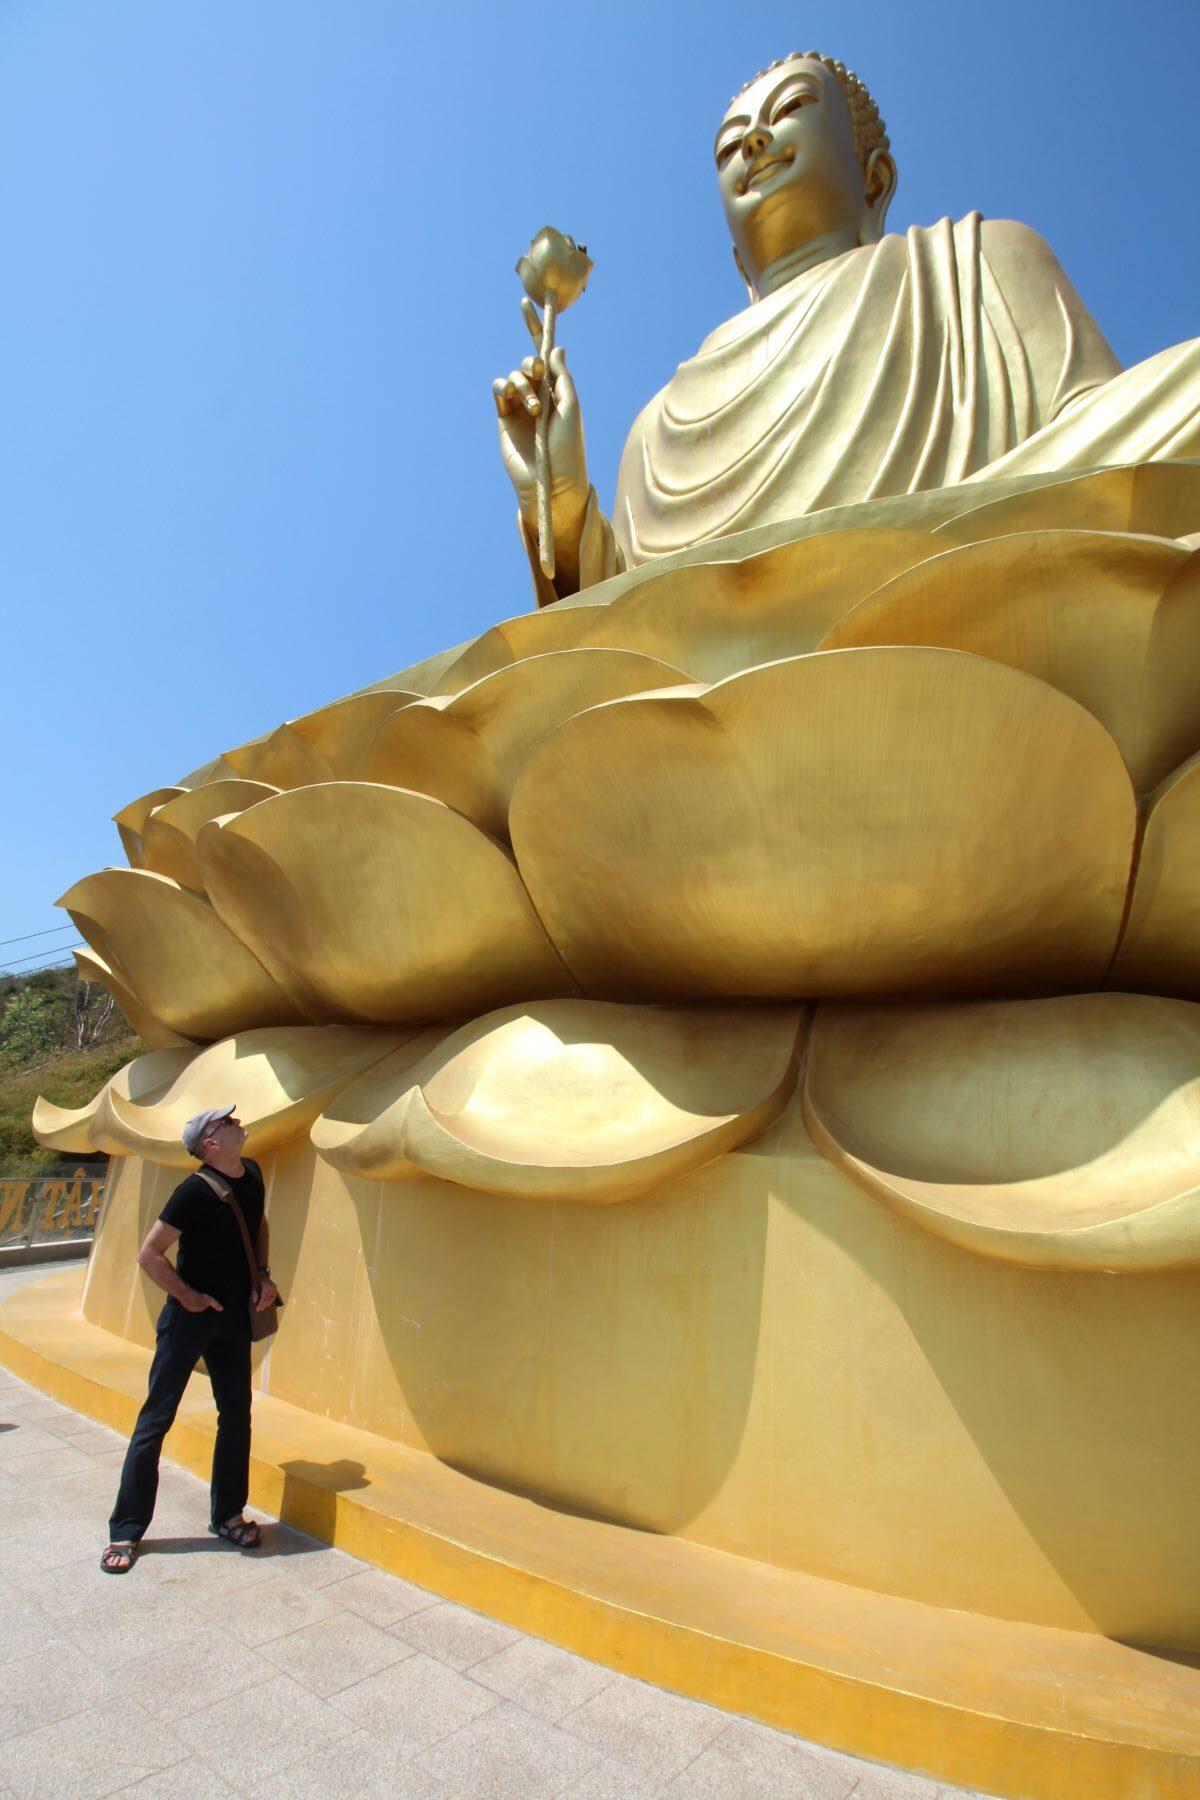 Nick Abbott at the golden Buddha, Chơn Không, Vũng Tàu